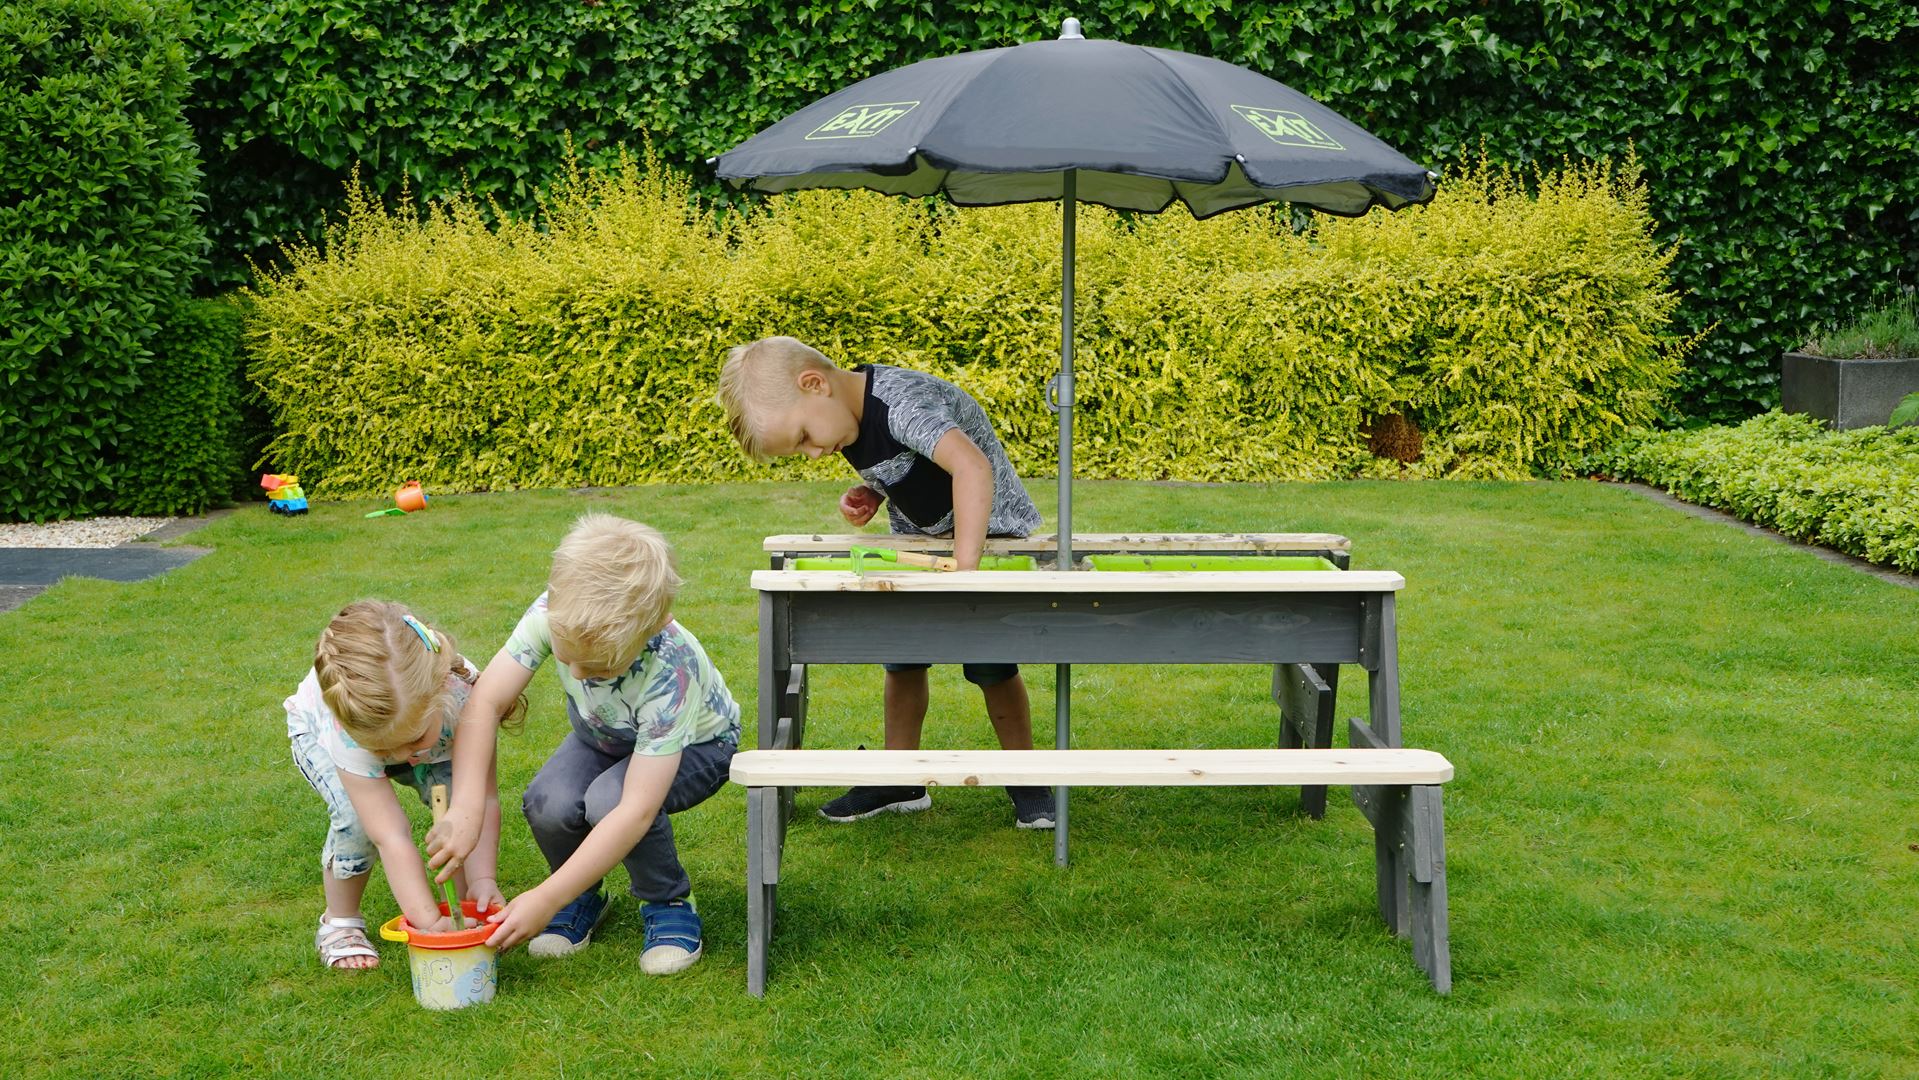 EXIT-Aksent-zand-water-en-picknicktafel-2-bankjes-met-parasol-en-tuingereedschap